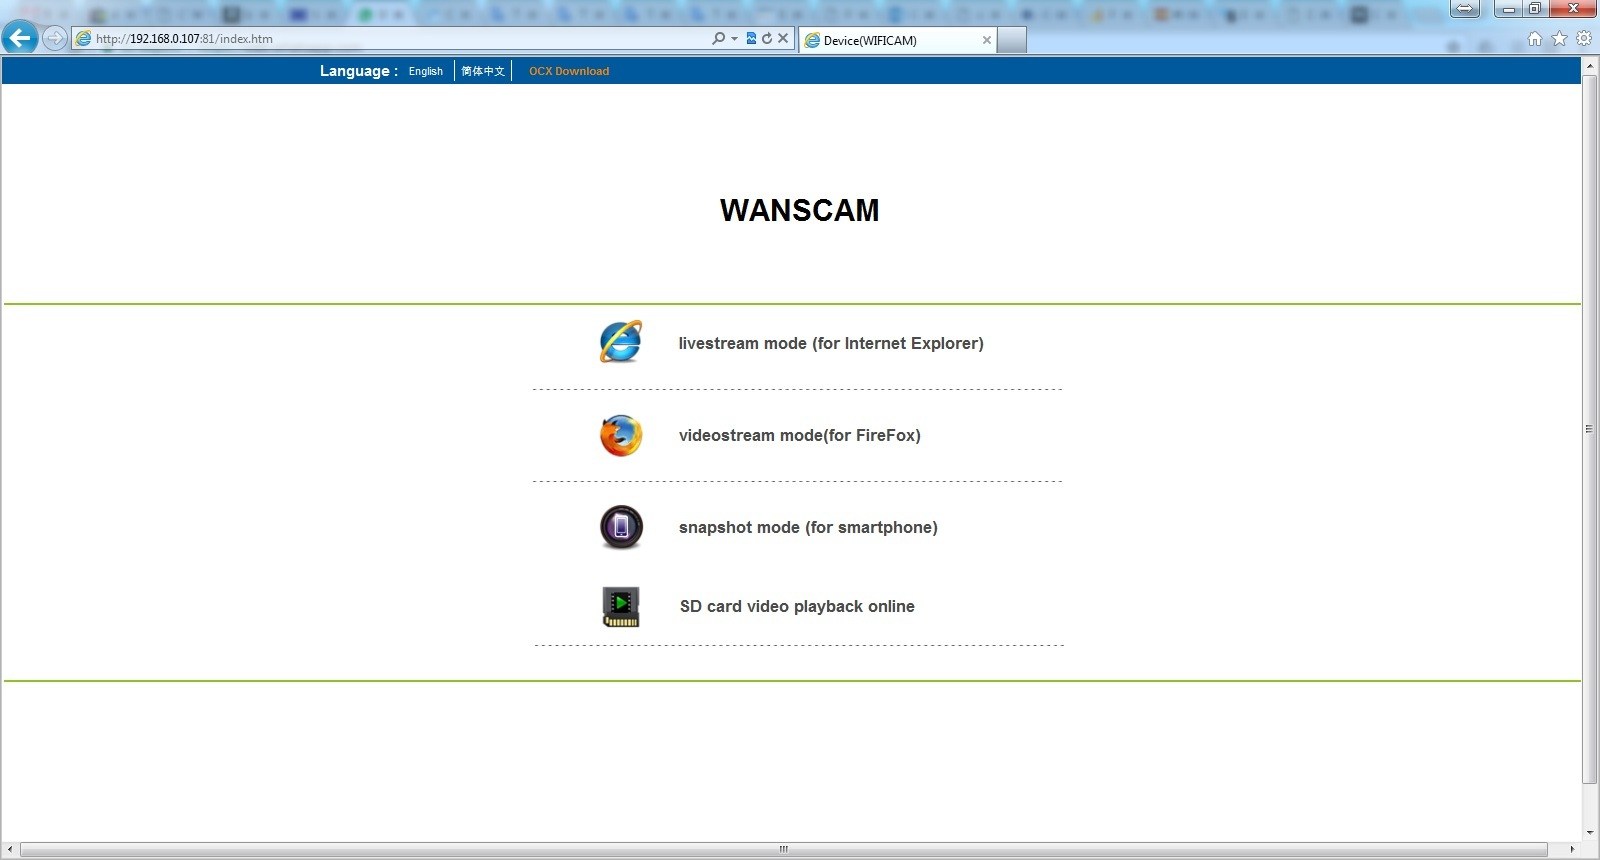 wanscam pc client software download